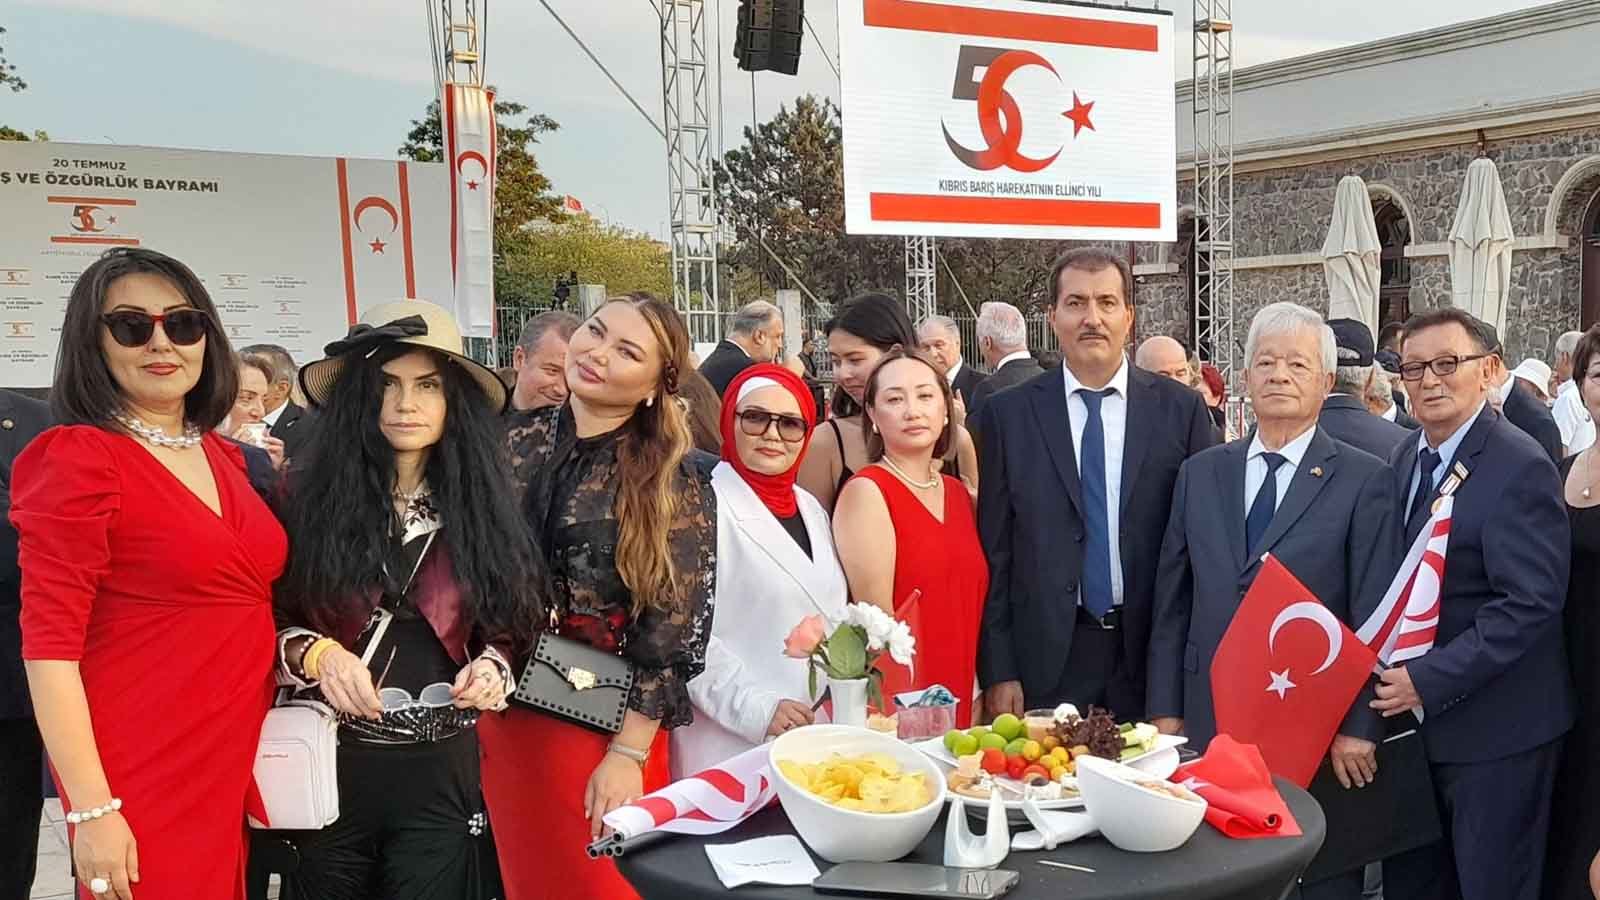 Kktc Diplomatik Resepsiyonda  dünya Gezgini Çiğdem Yorgancıoğlu